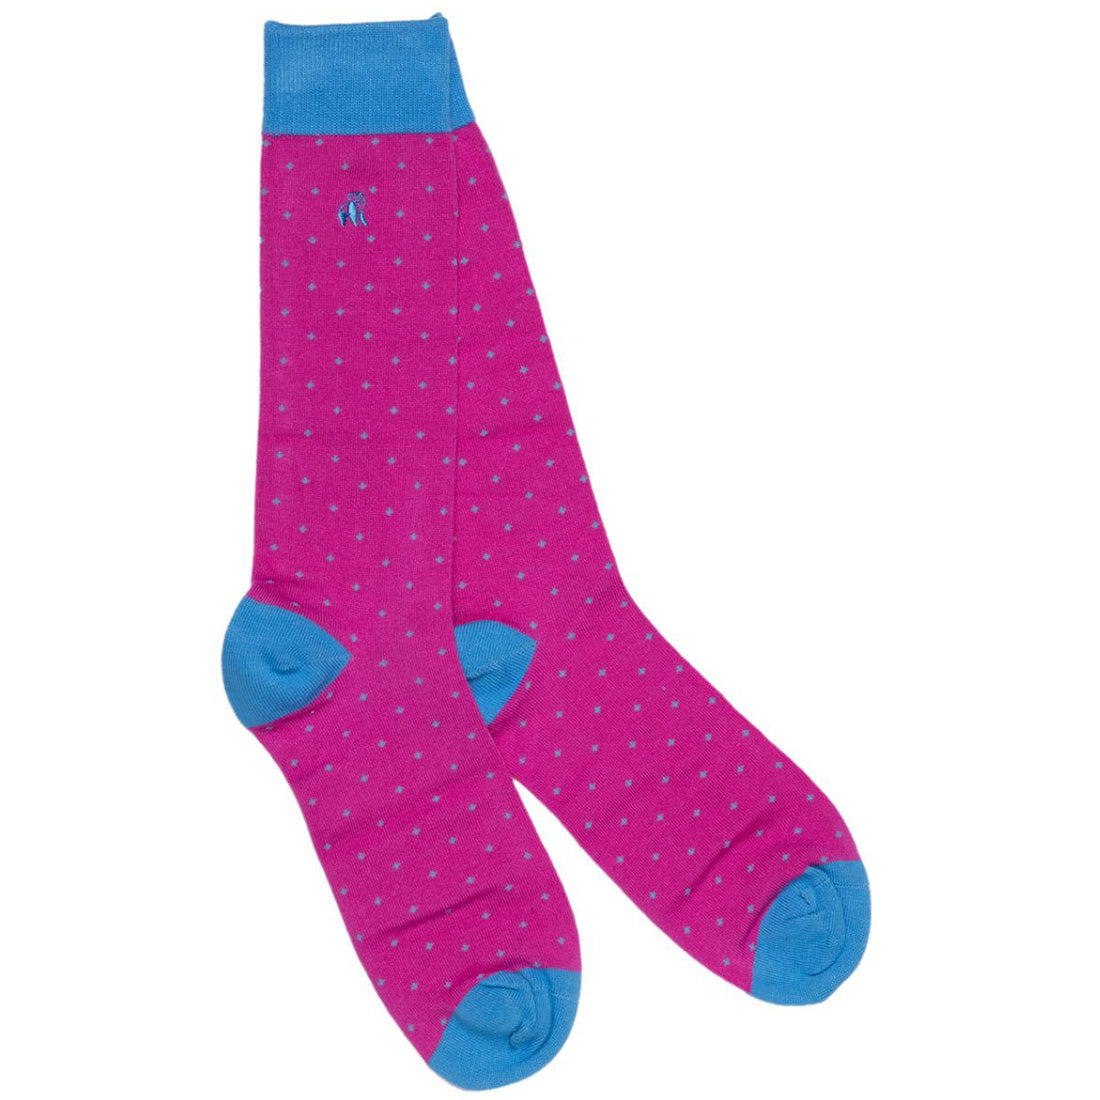 socks-spotted-blue-bamboo-socks-1.jpg